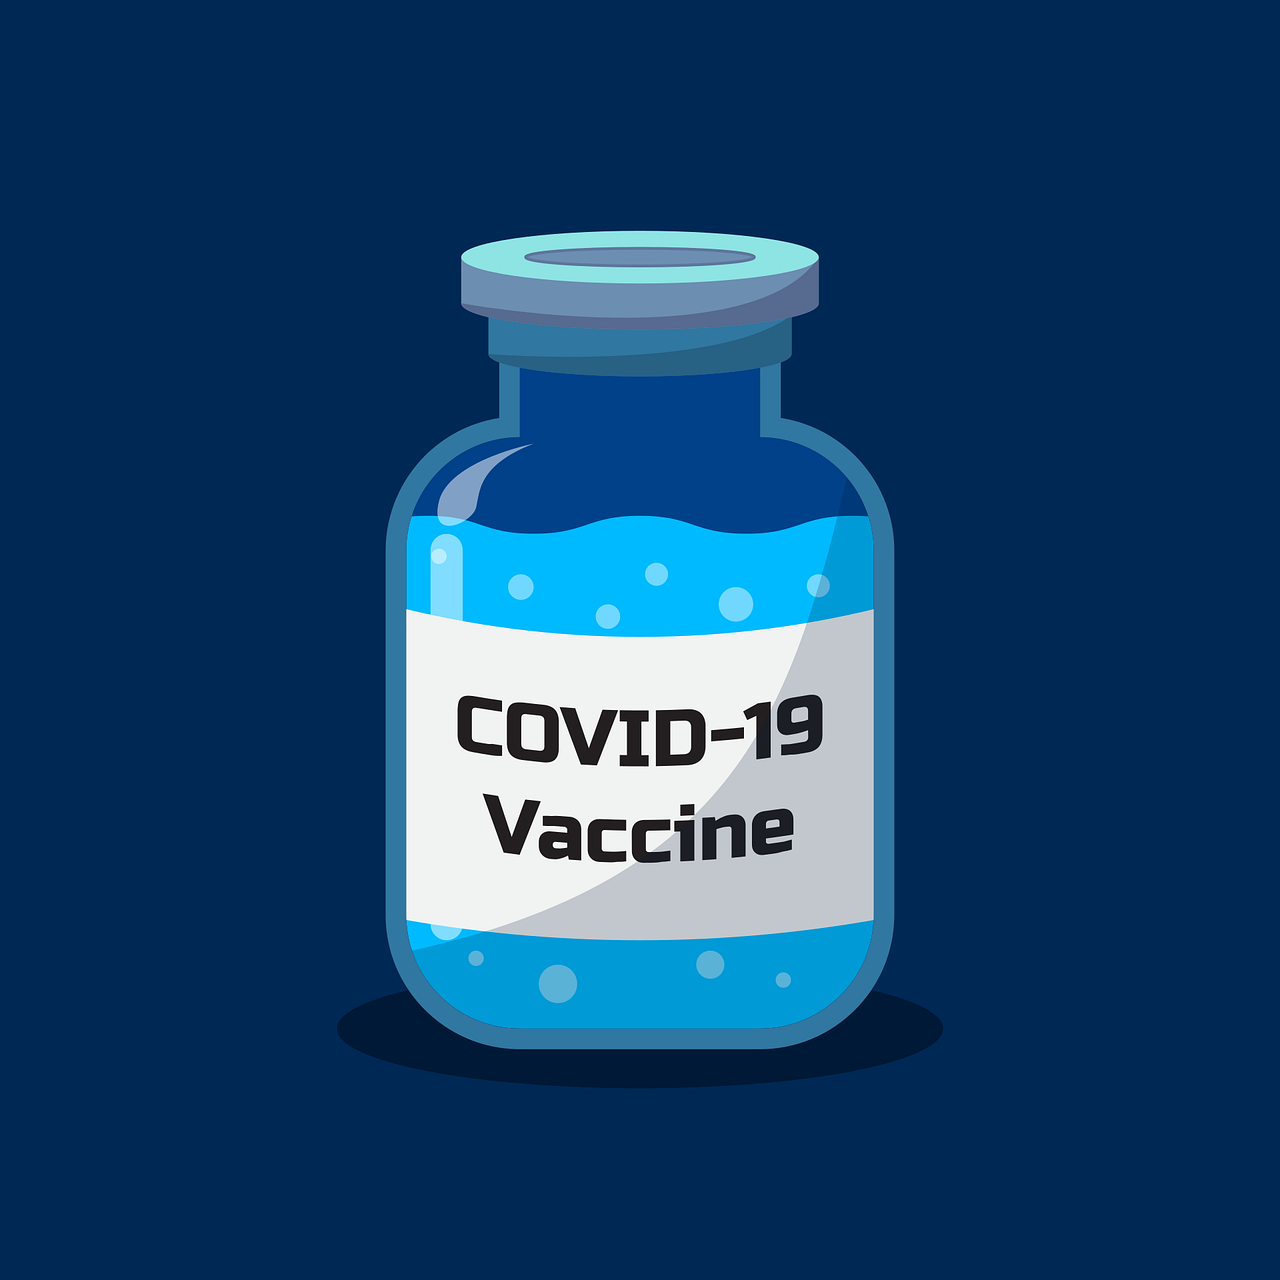 WHO: Vaksin Booster Covid-19 Hanya untuk Kelompok Berisiko Tinggi Saja!